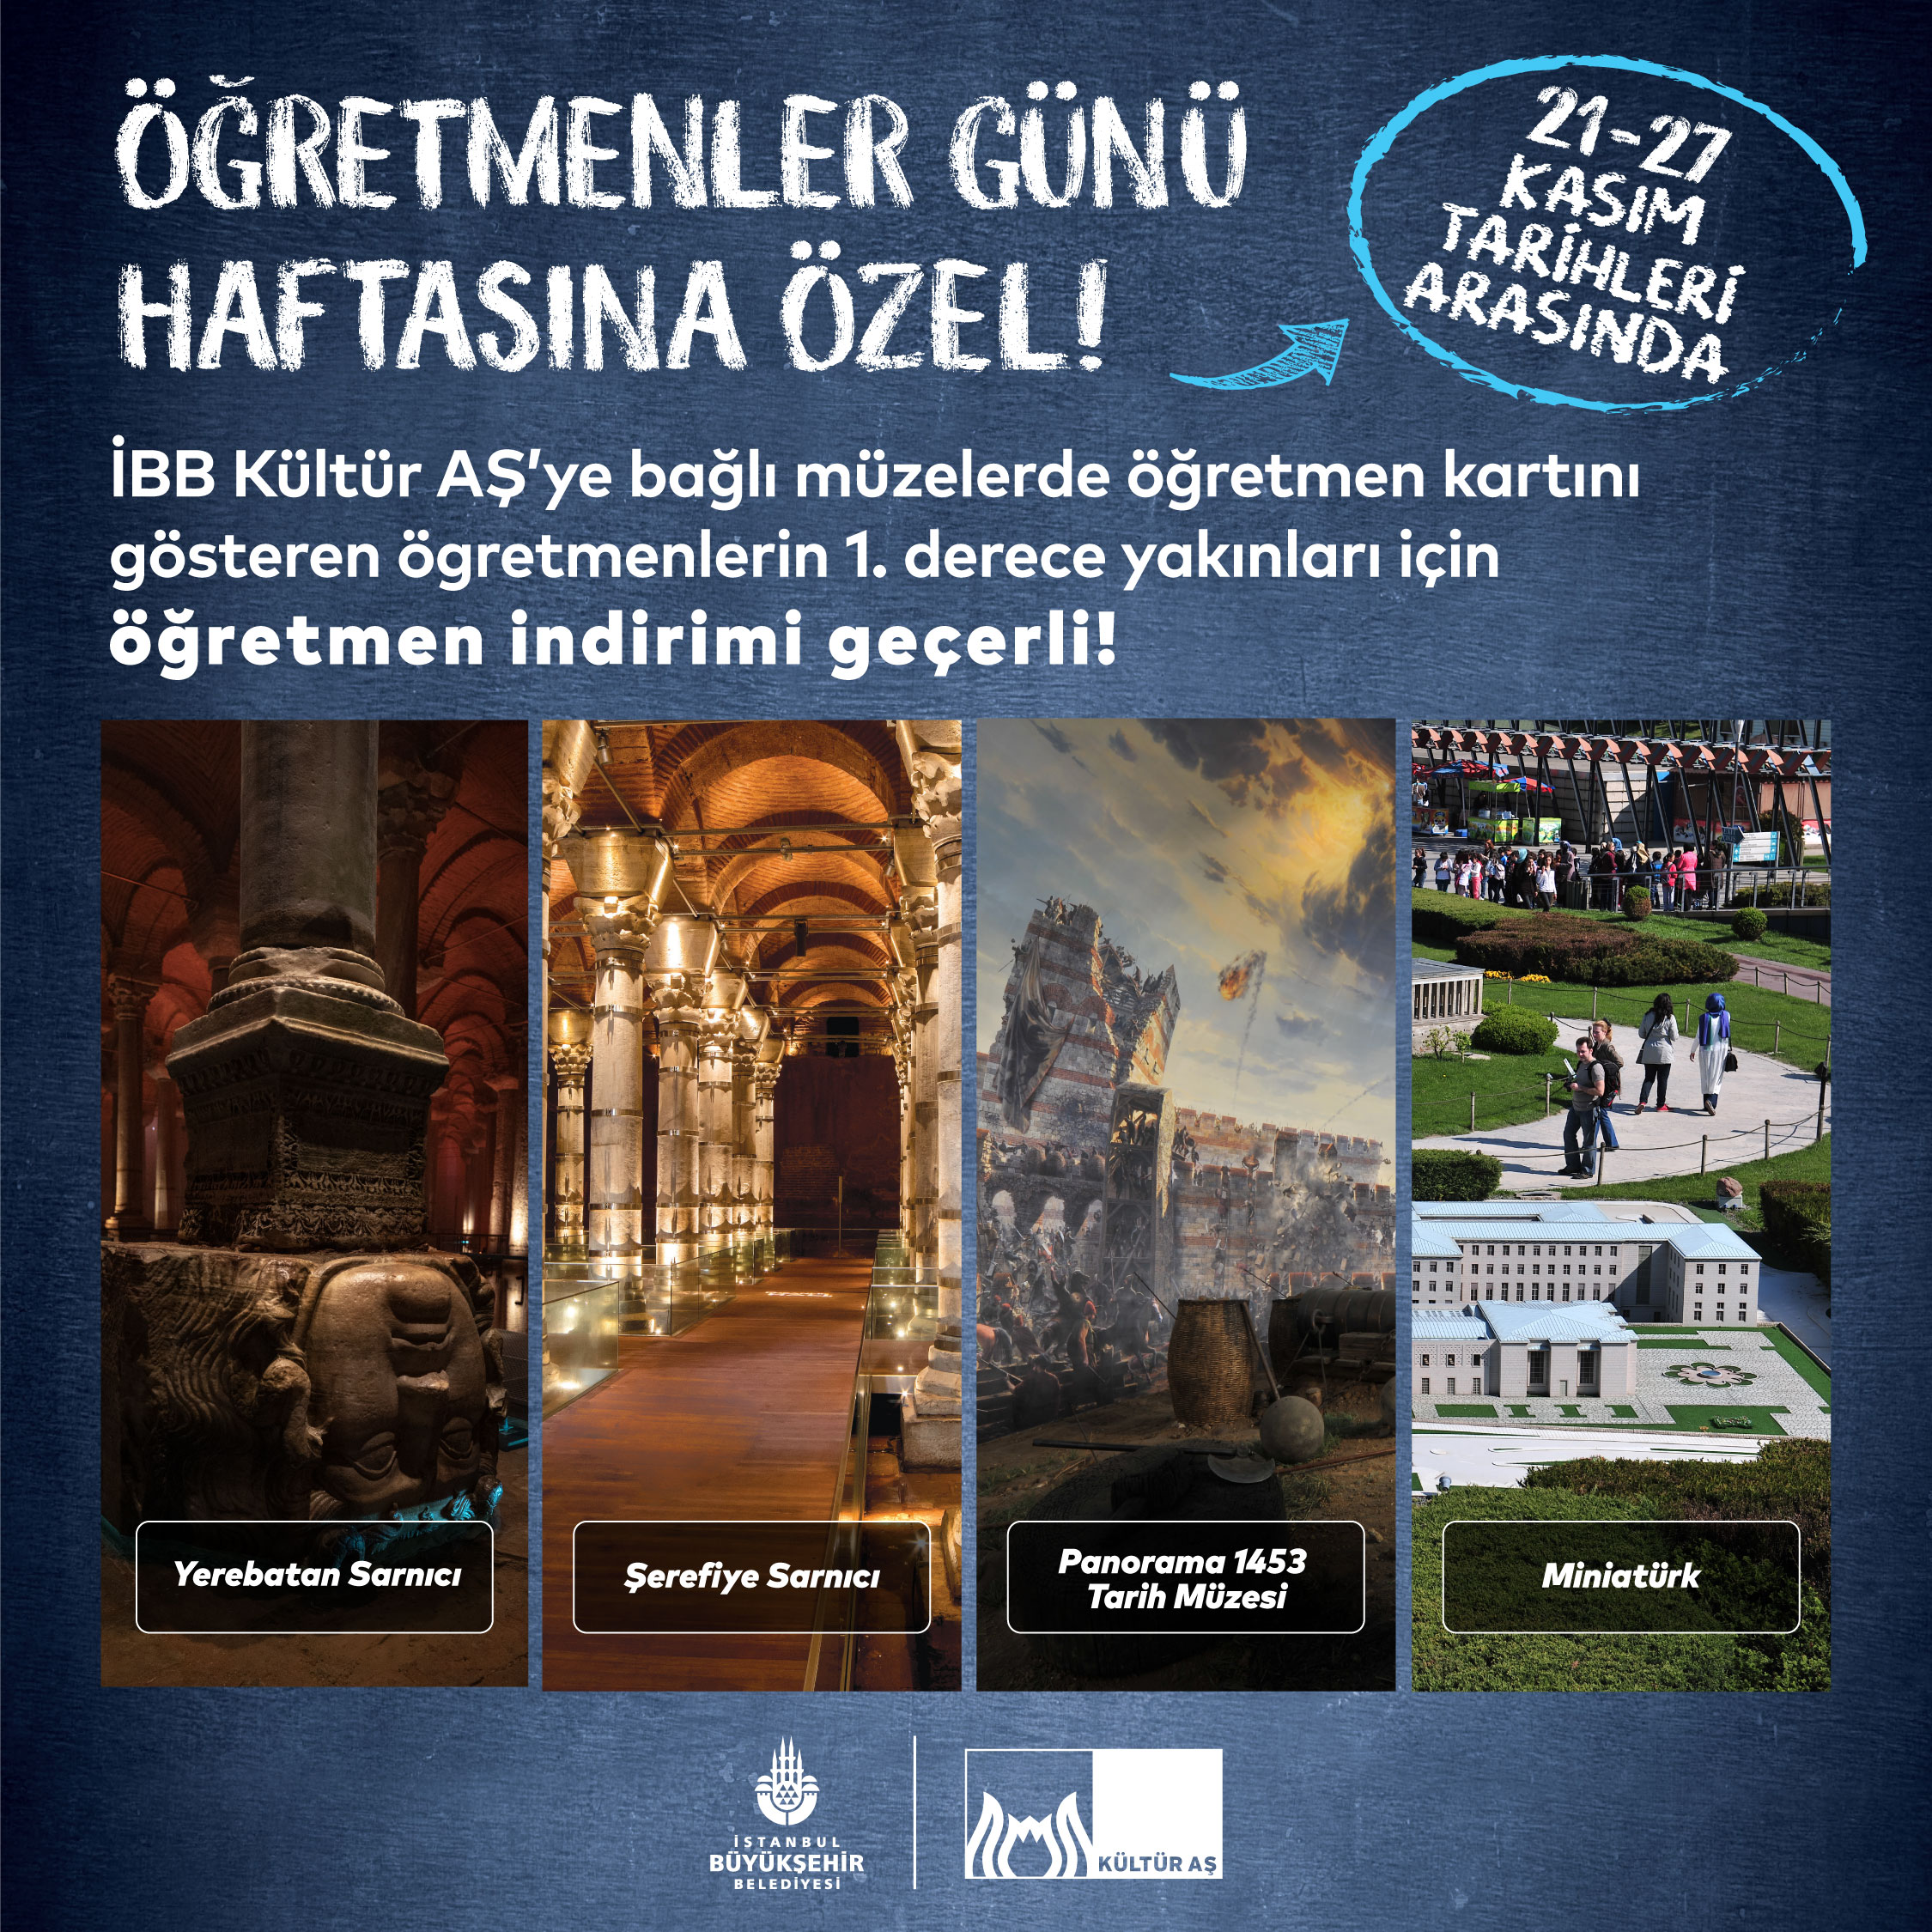 İstanbul Kitapçısı'ndan Öğretmenler Günü'ne özel kampanya! - KÜLTÜR.İSTANBUL